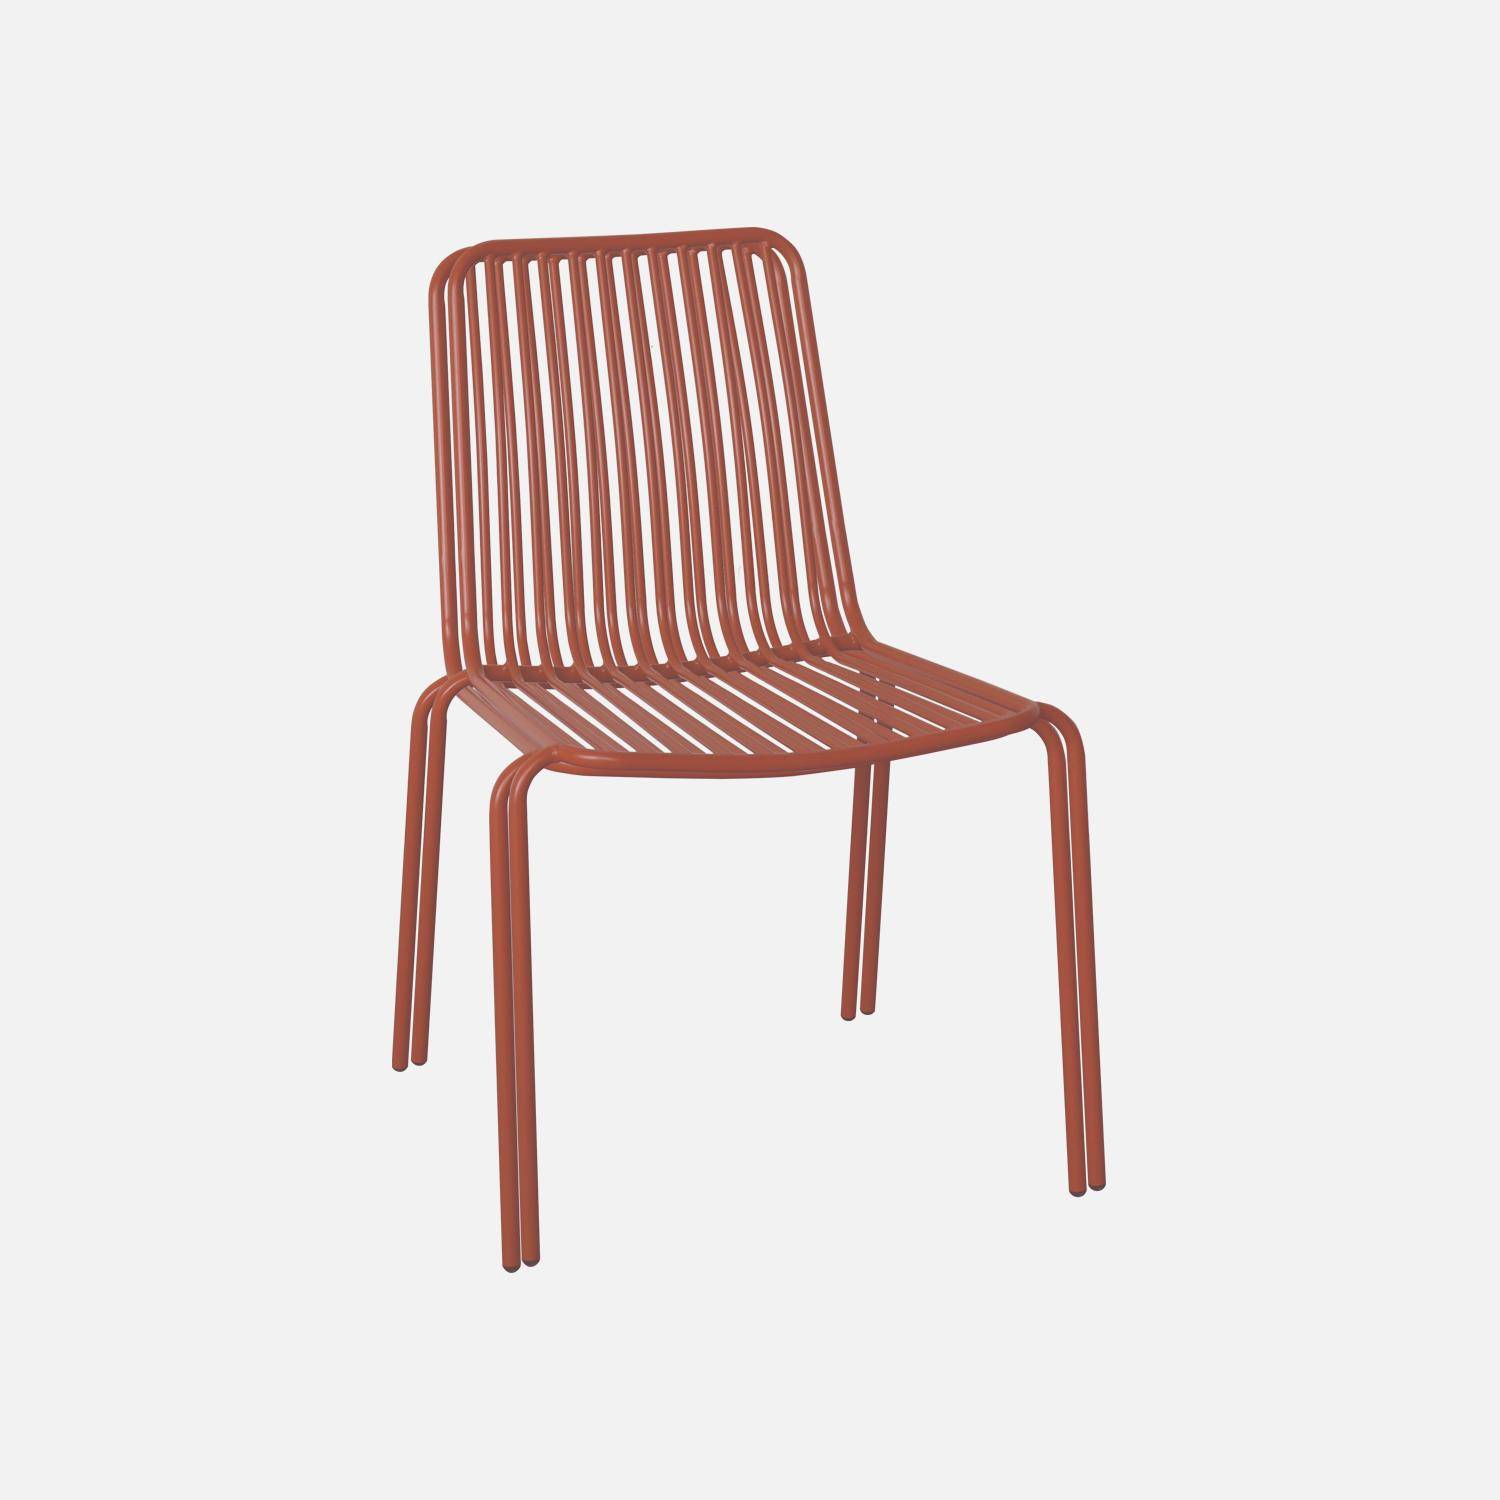 Lot de 2 chaises de jardin en acier terracotta , empilables, design linéaire ,sweeek,Photo3